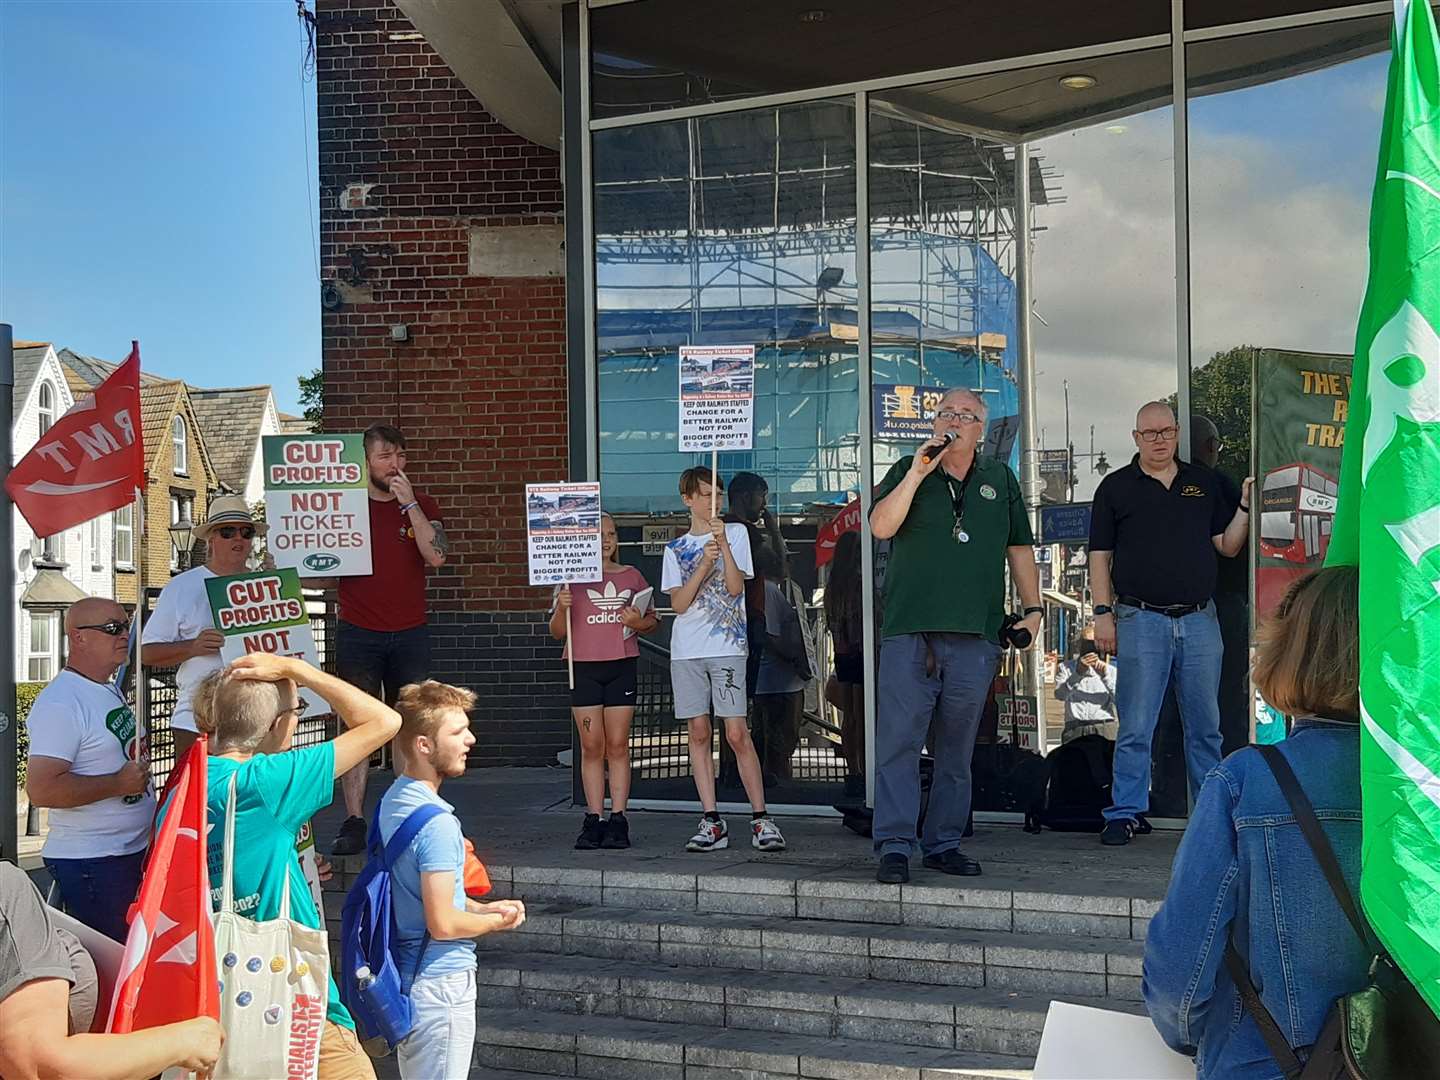 Ivor Riddell spoke at the rally in Gillingham